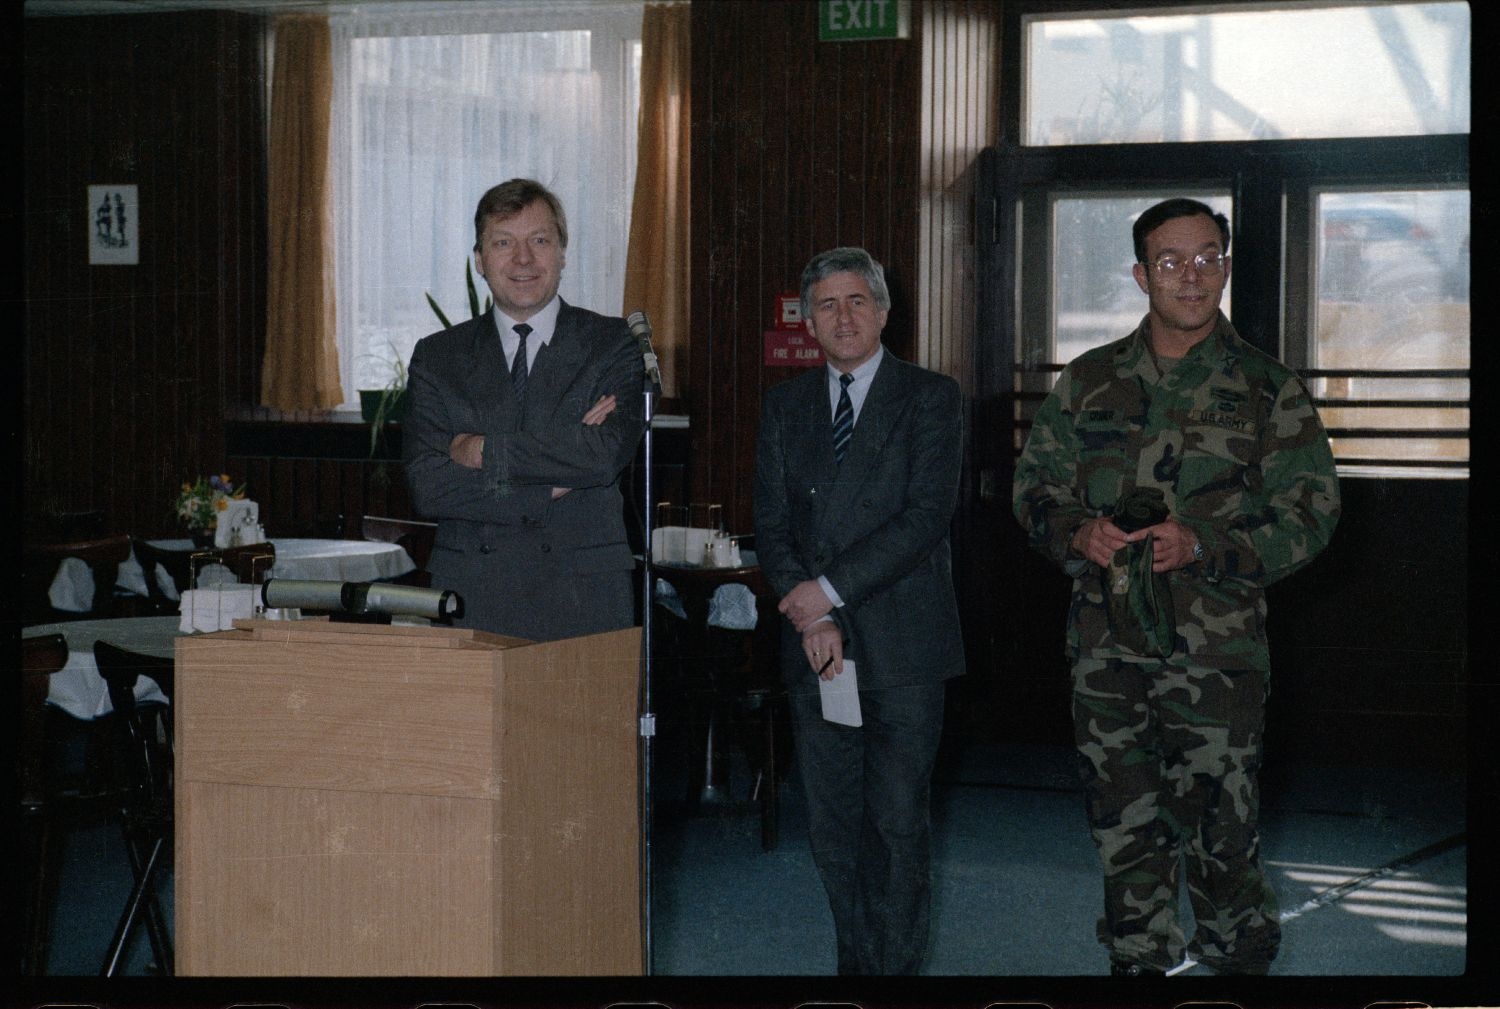 Fotografie: Besuch von Eberhard Diepgen, Regierender Bürgermeister von Berlin, in den McNair Barracks in Berlin-Lichterfelde (AlliiertenMuseum/U.S. Army Photograph Public Domain Mark)